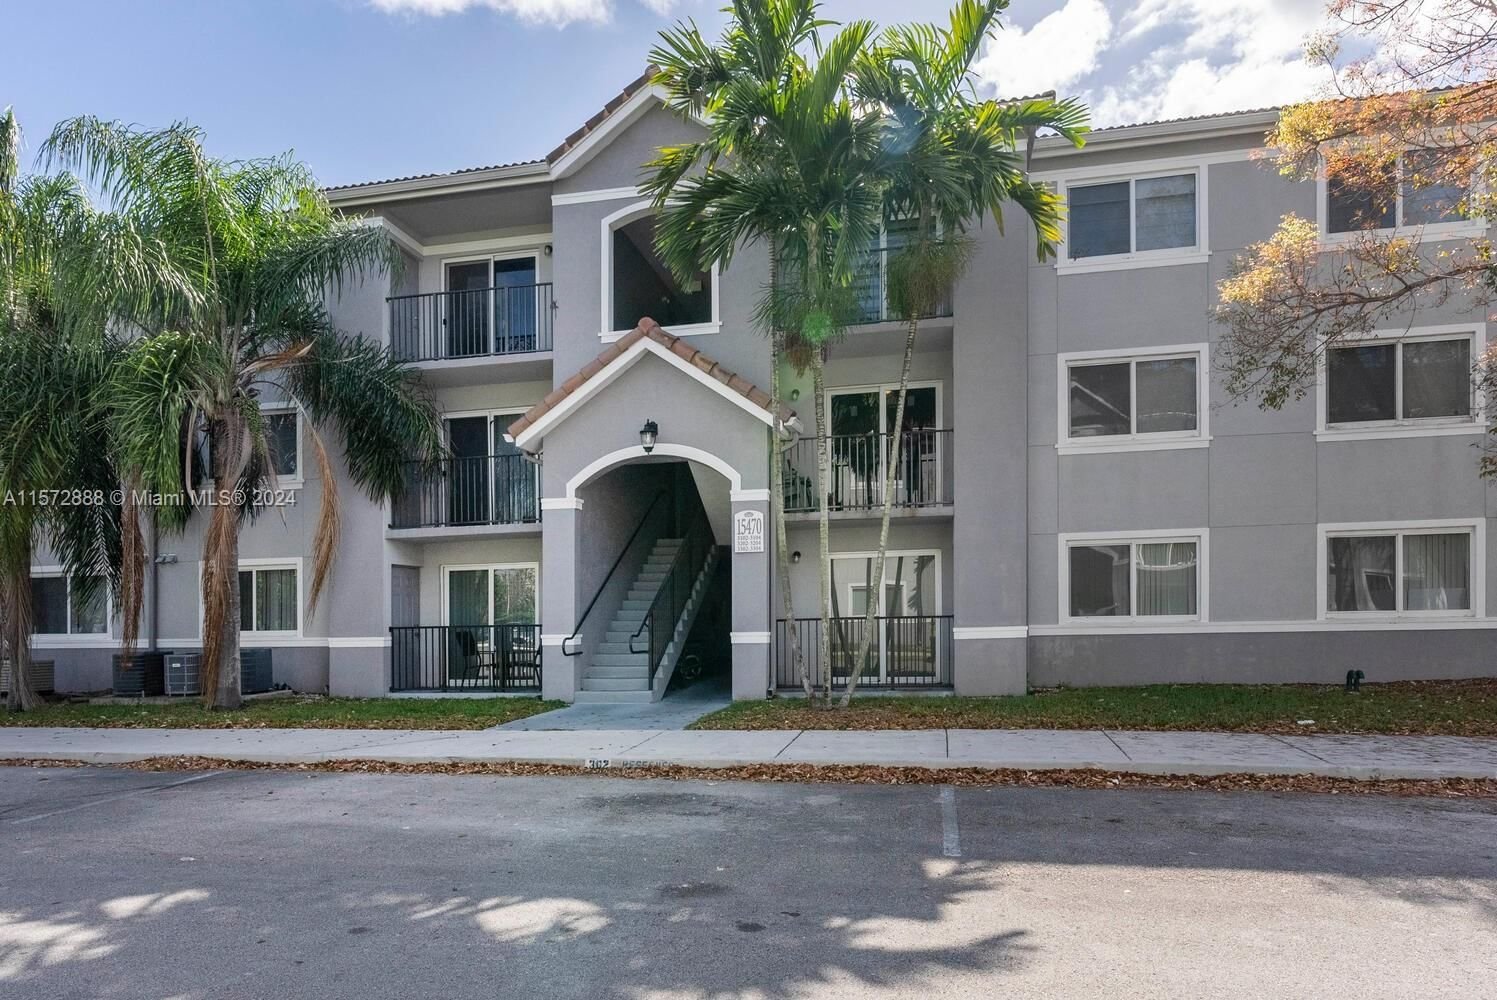 Real estate property located at 15470 284th St #3103, Miami-Dade County, VISTA TRACE 3 CONDO, Homestead, FL